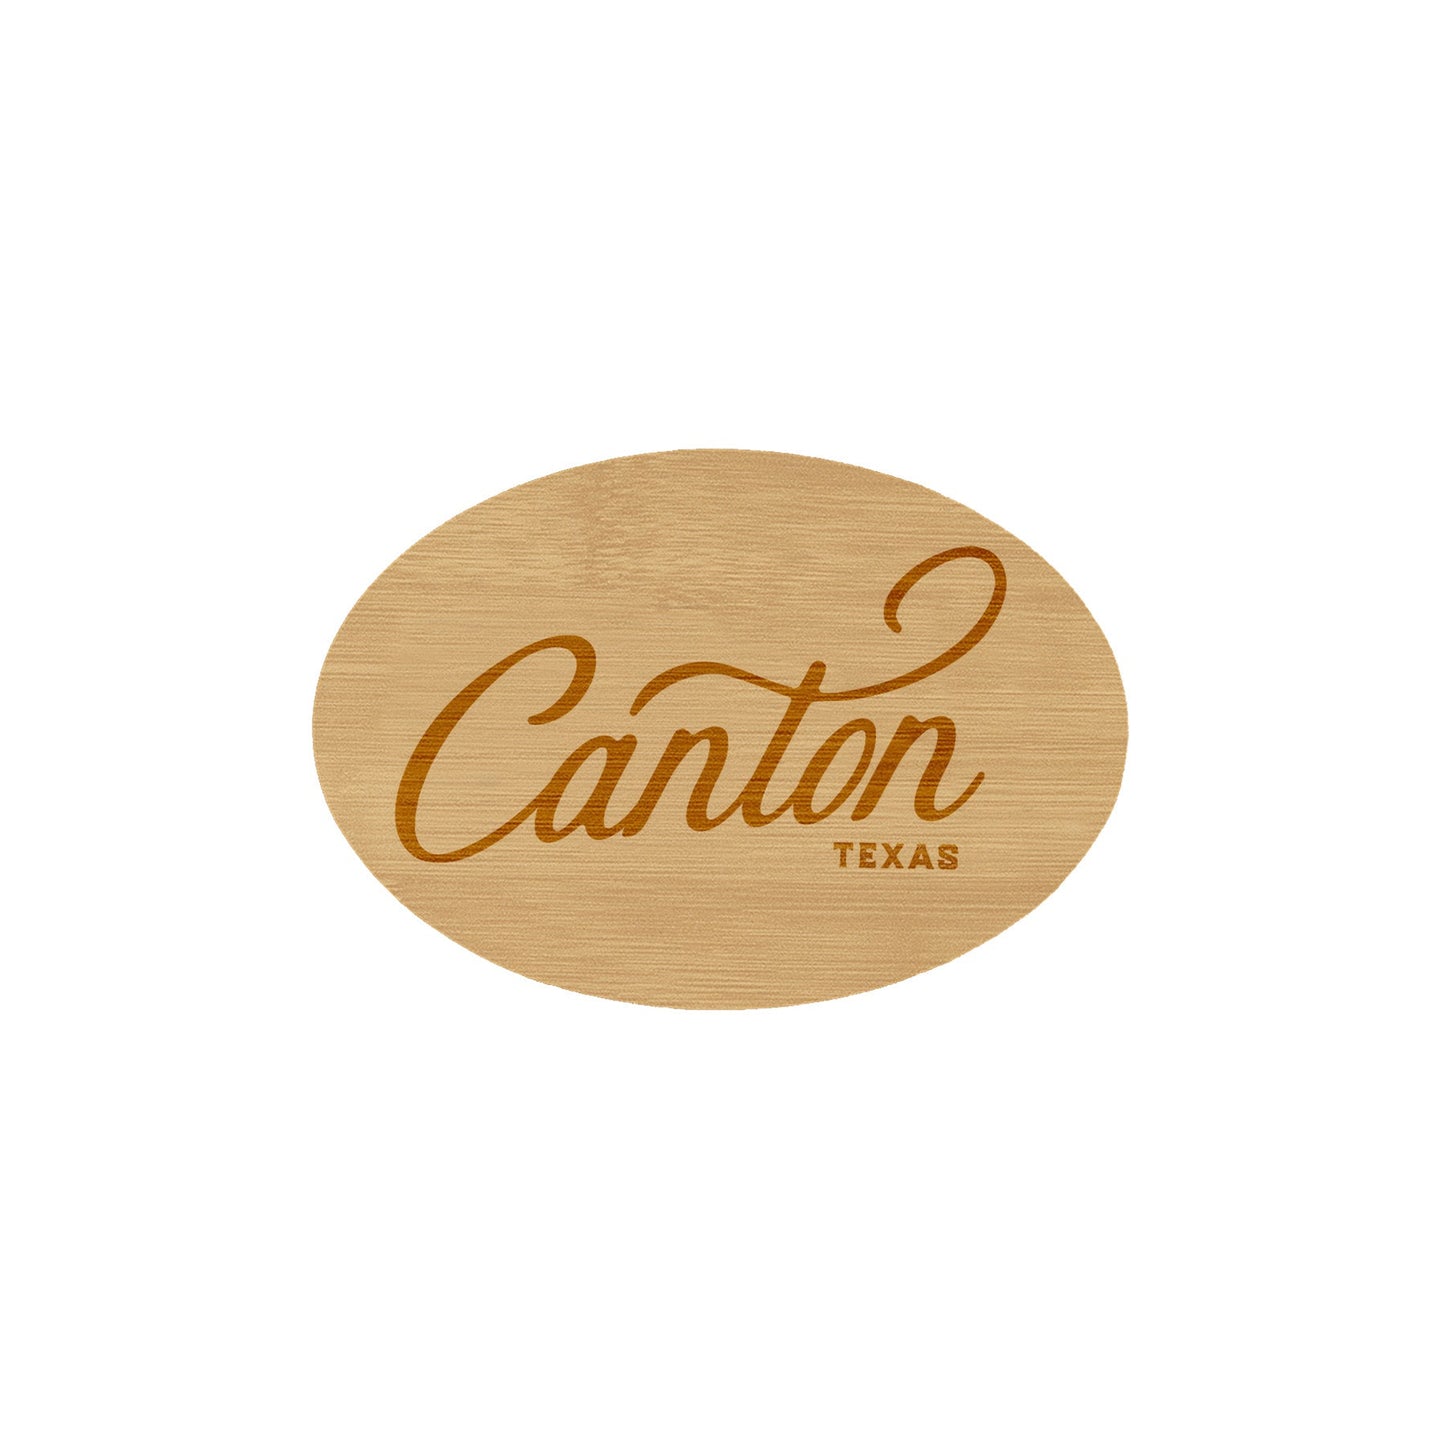 Canton Texas Wooden Magnet